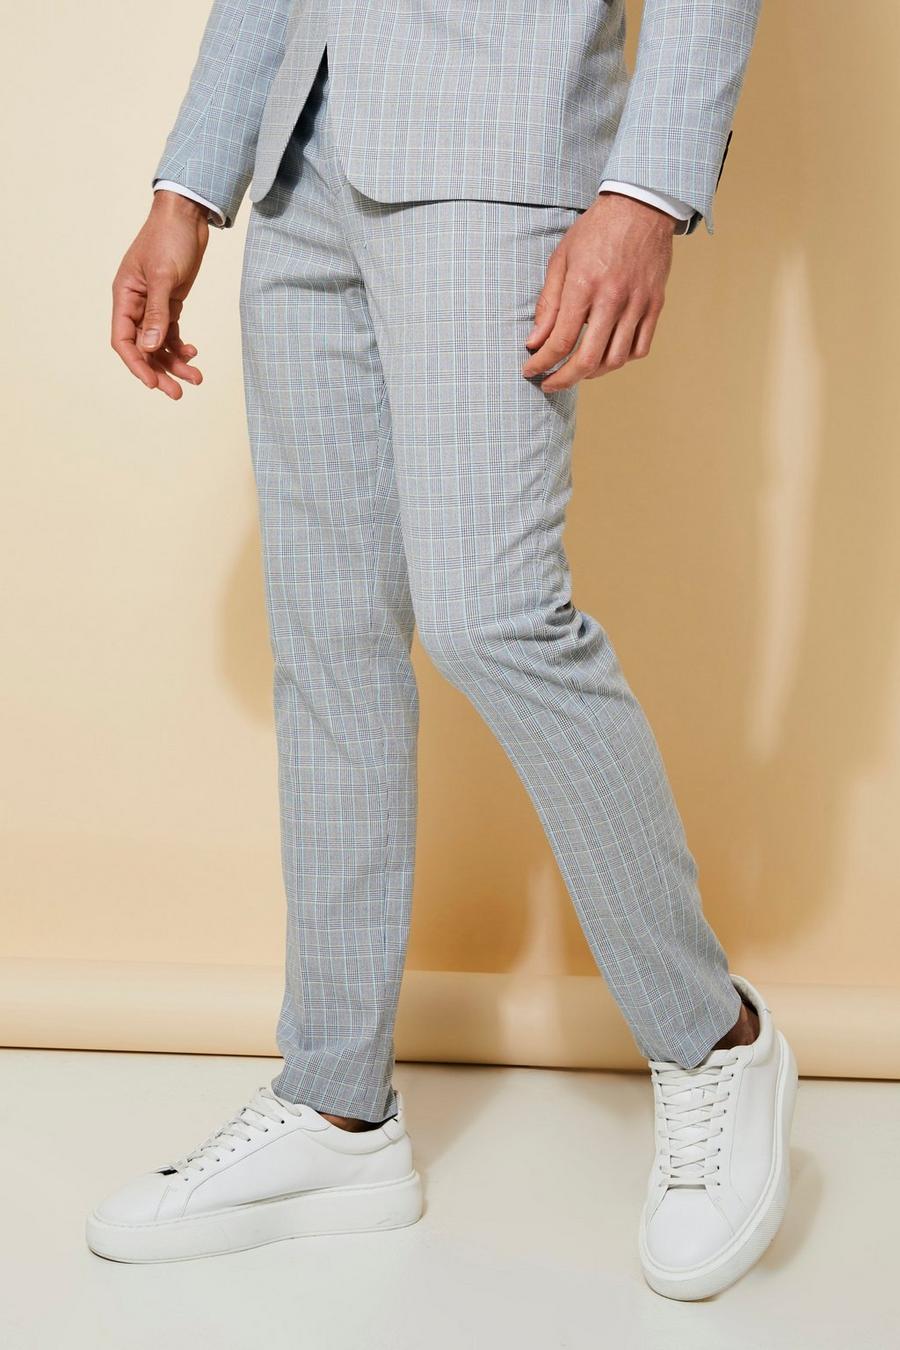 אפור בהיר grigio  מכנסי חליפה סקיני עם הדפס משבצות